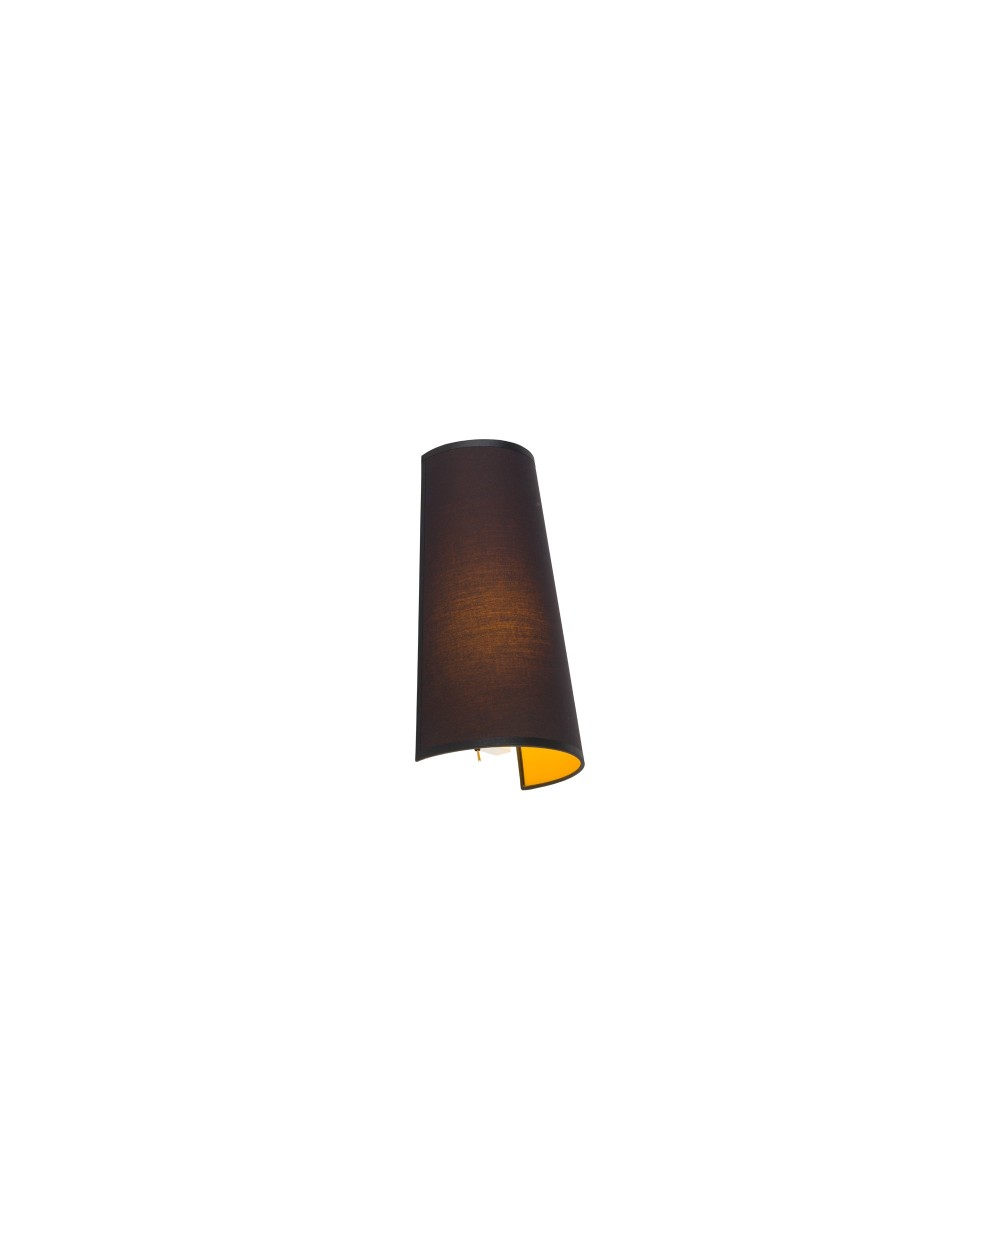 Kinkiet, lampa ścienna FARO - Nowodvorski Oświetlenie wewnętrzne